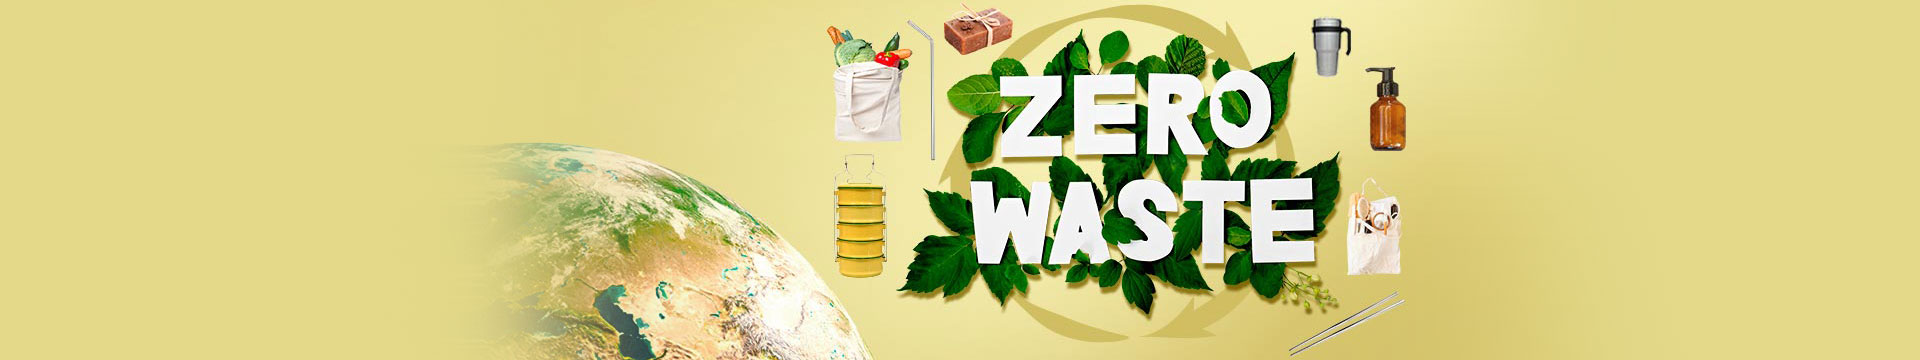 เริ่มแล้ว “Zero Waste” ชีวิตยุคใหม่ เปลี่ยนขยะให้เป็นศูนย์